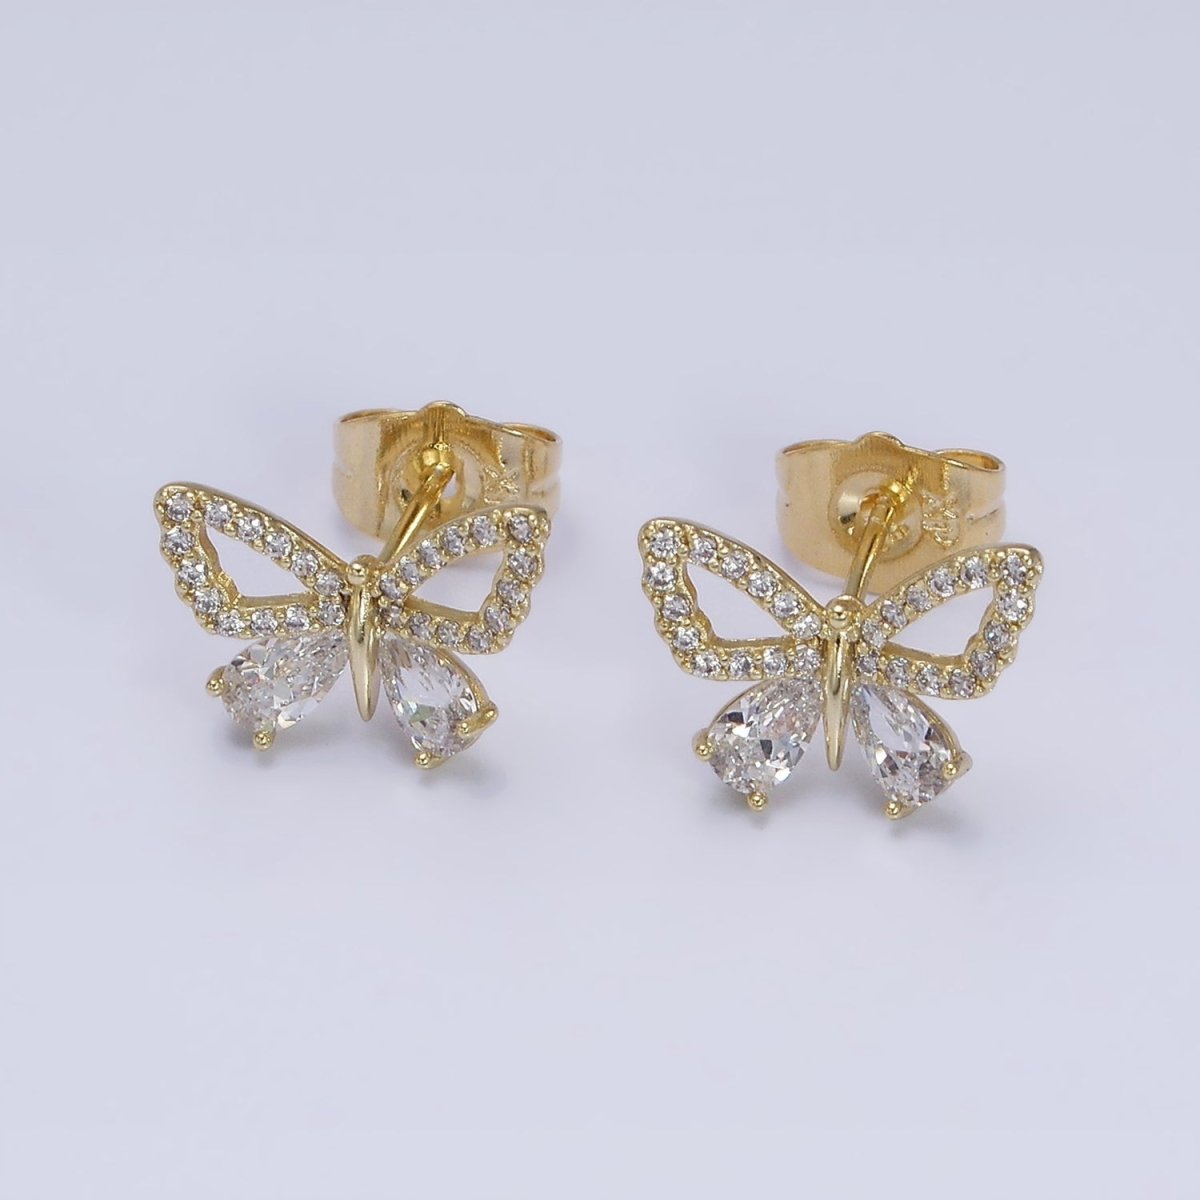 OS 14K Gold Filled CZ Teardrop Micro Paved Open Wings Butterfly Mariposa Stud Earrings | AD1456 - DLUXCA